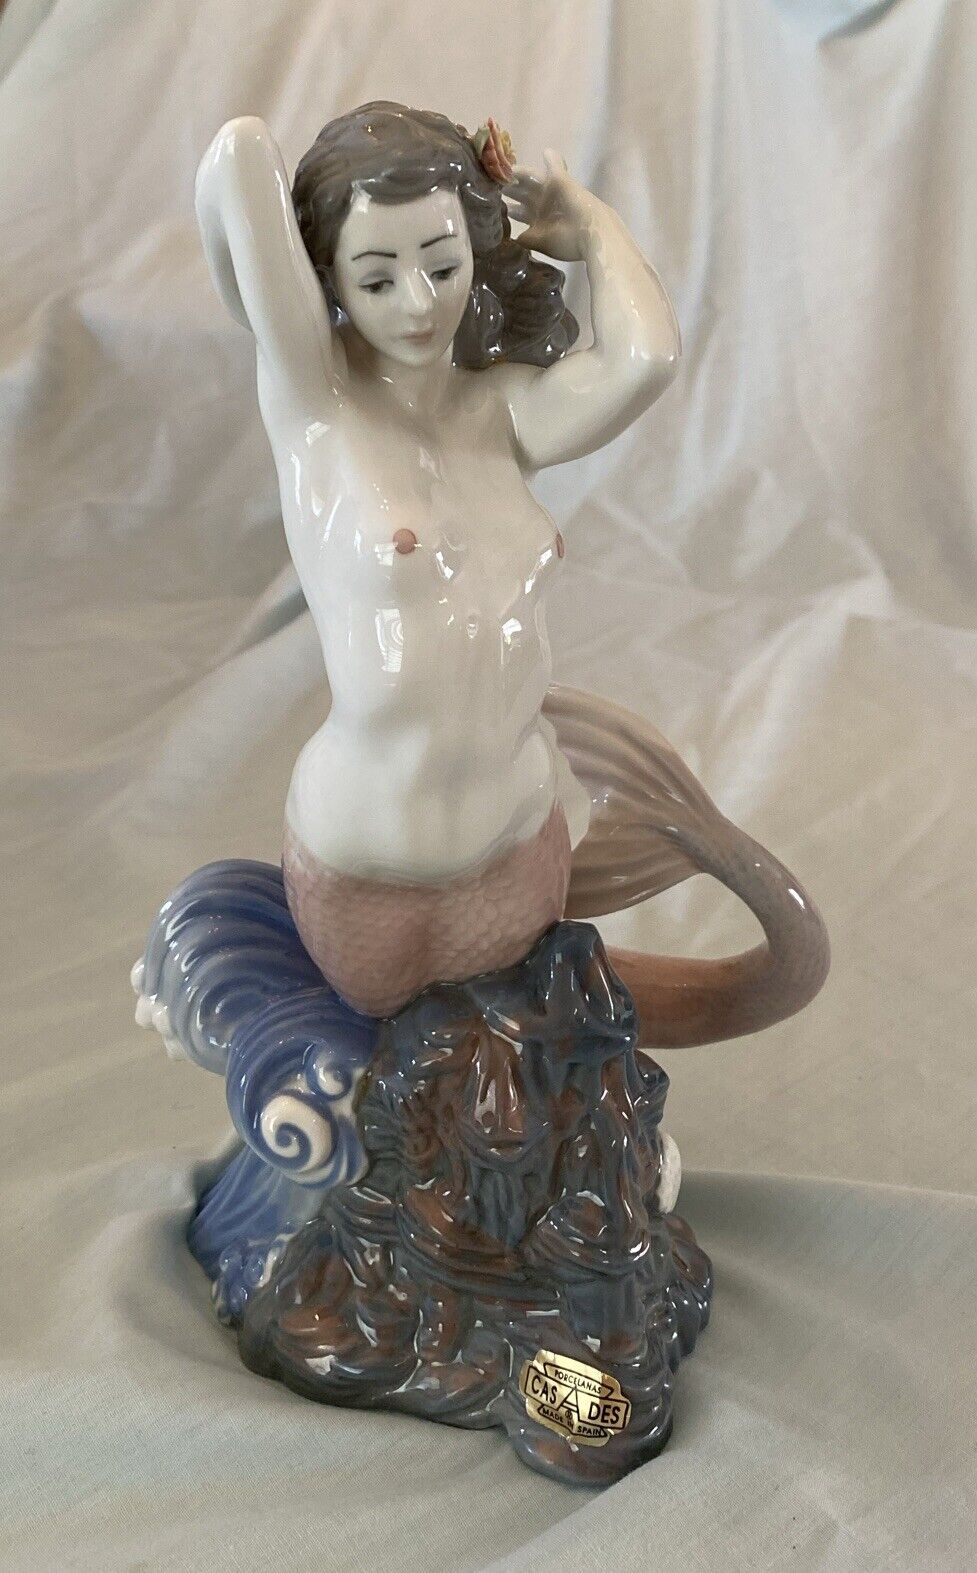 Rare Vintage CasAdes Nude Mermaid Figurine Design 9”